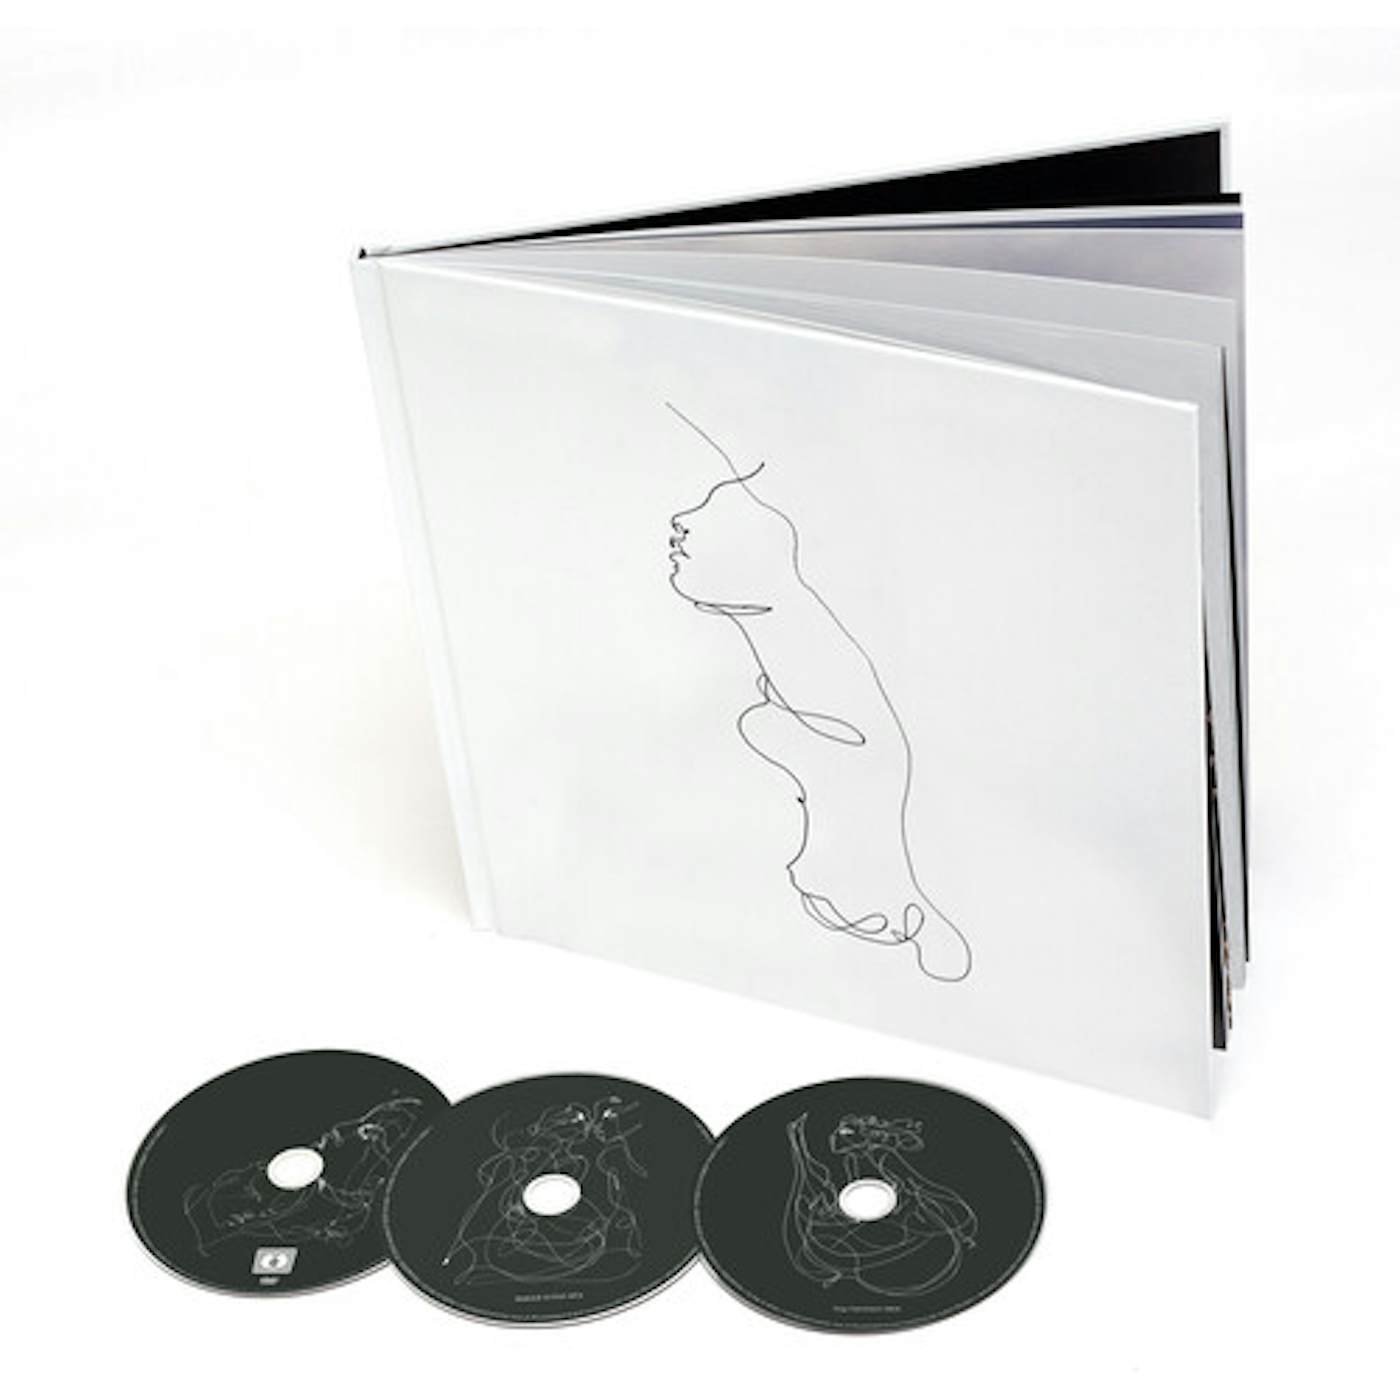 Jon Gomm FAINTEST IDEA CD